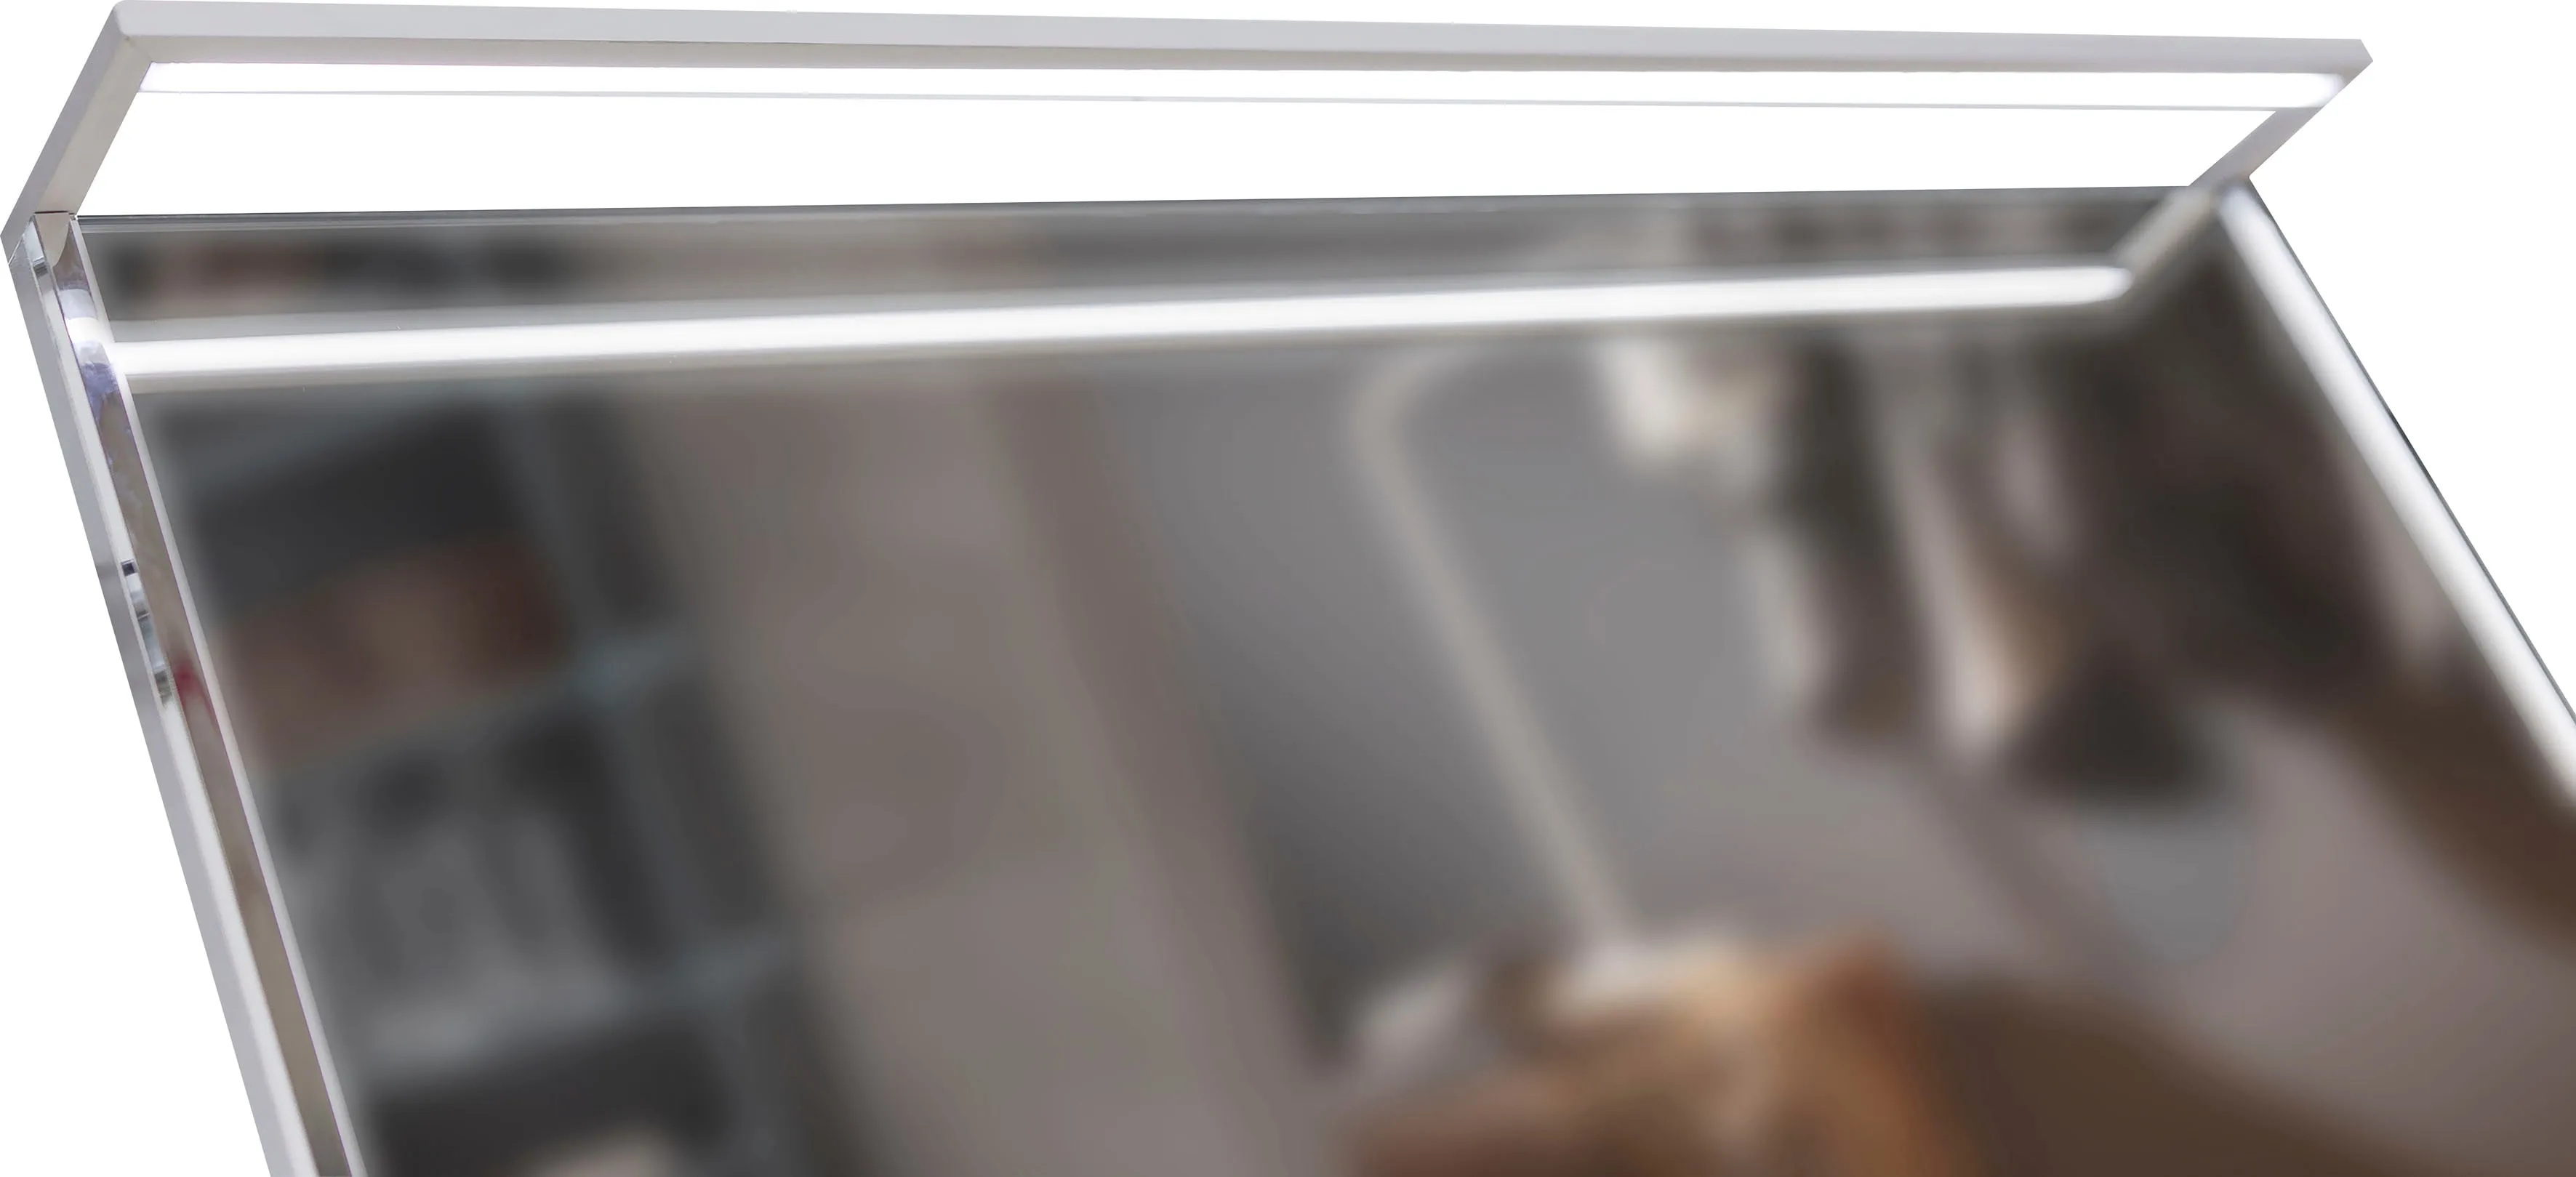 LED Aufbaustrahler MARLIN "Überbauleuchte" Lampen grau (alu) Spiegelleuchte Deckenstrahler für Badezimmer-Spiegel